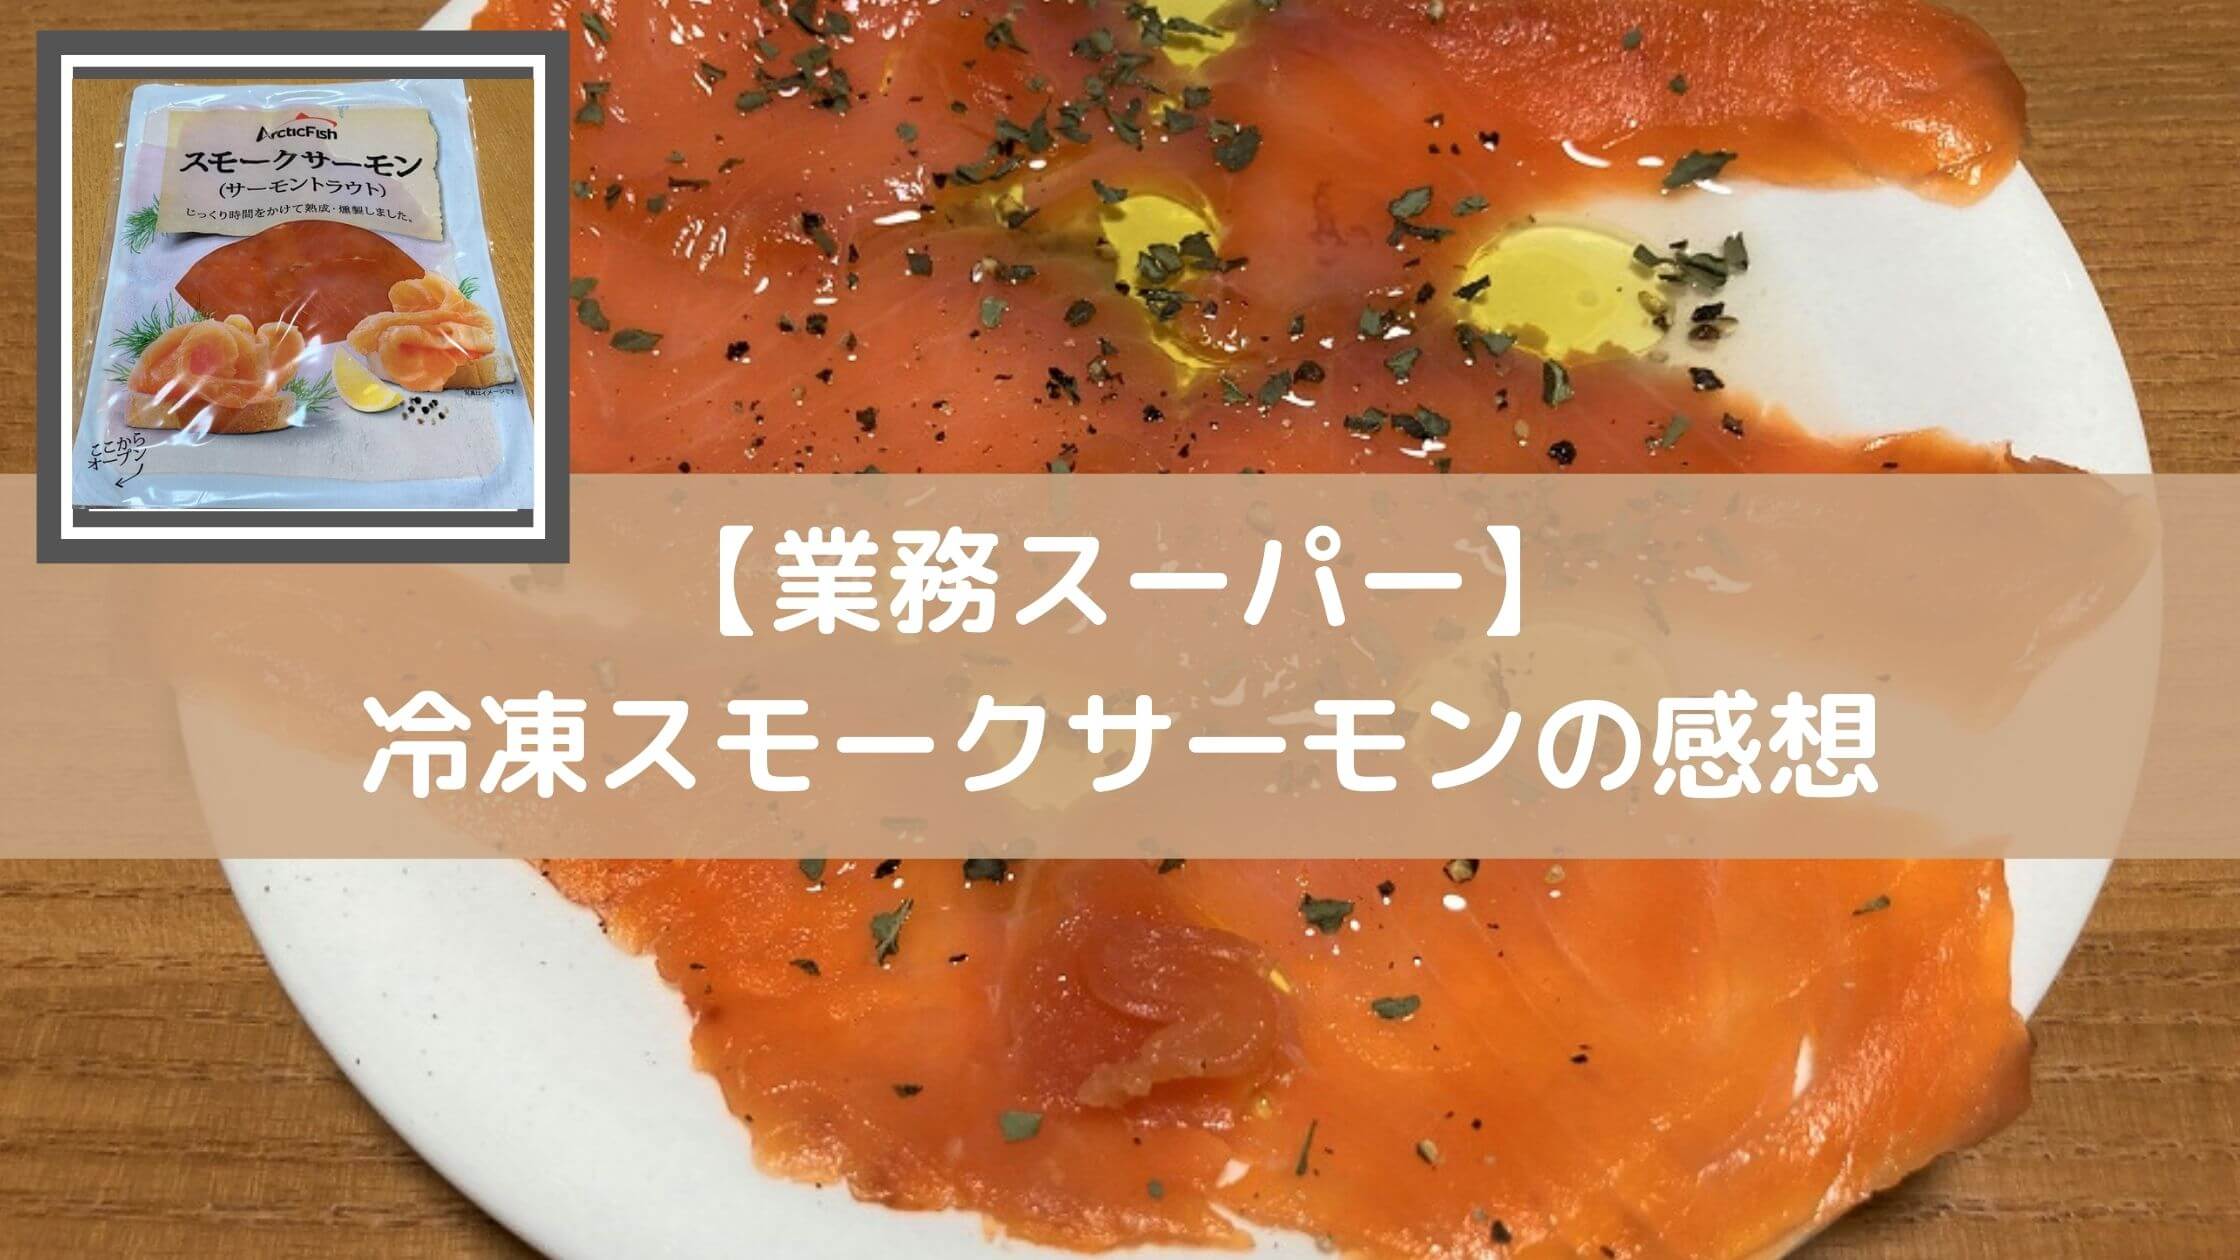 激安☆超特価紅鮭 スモークサーモン スライス 燻製 500g 冷凍 スモーク 業務用 鮭、サーモン